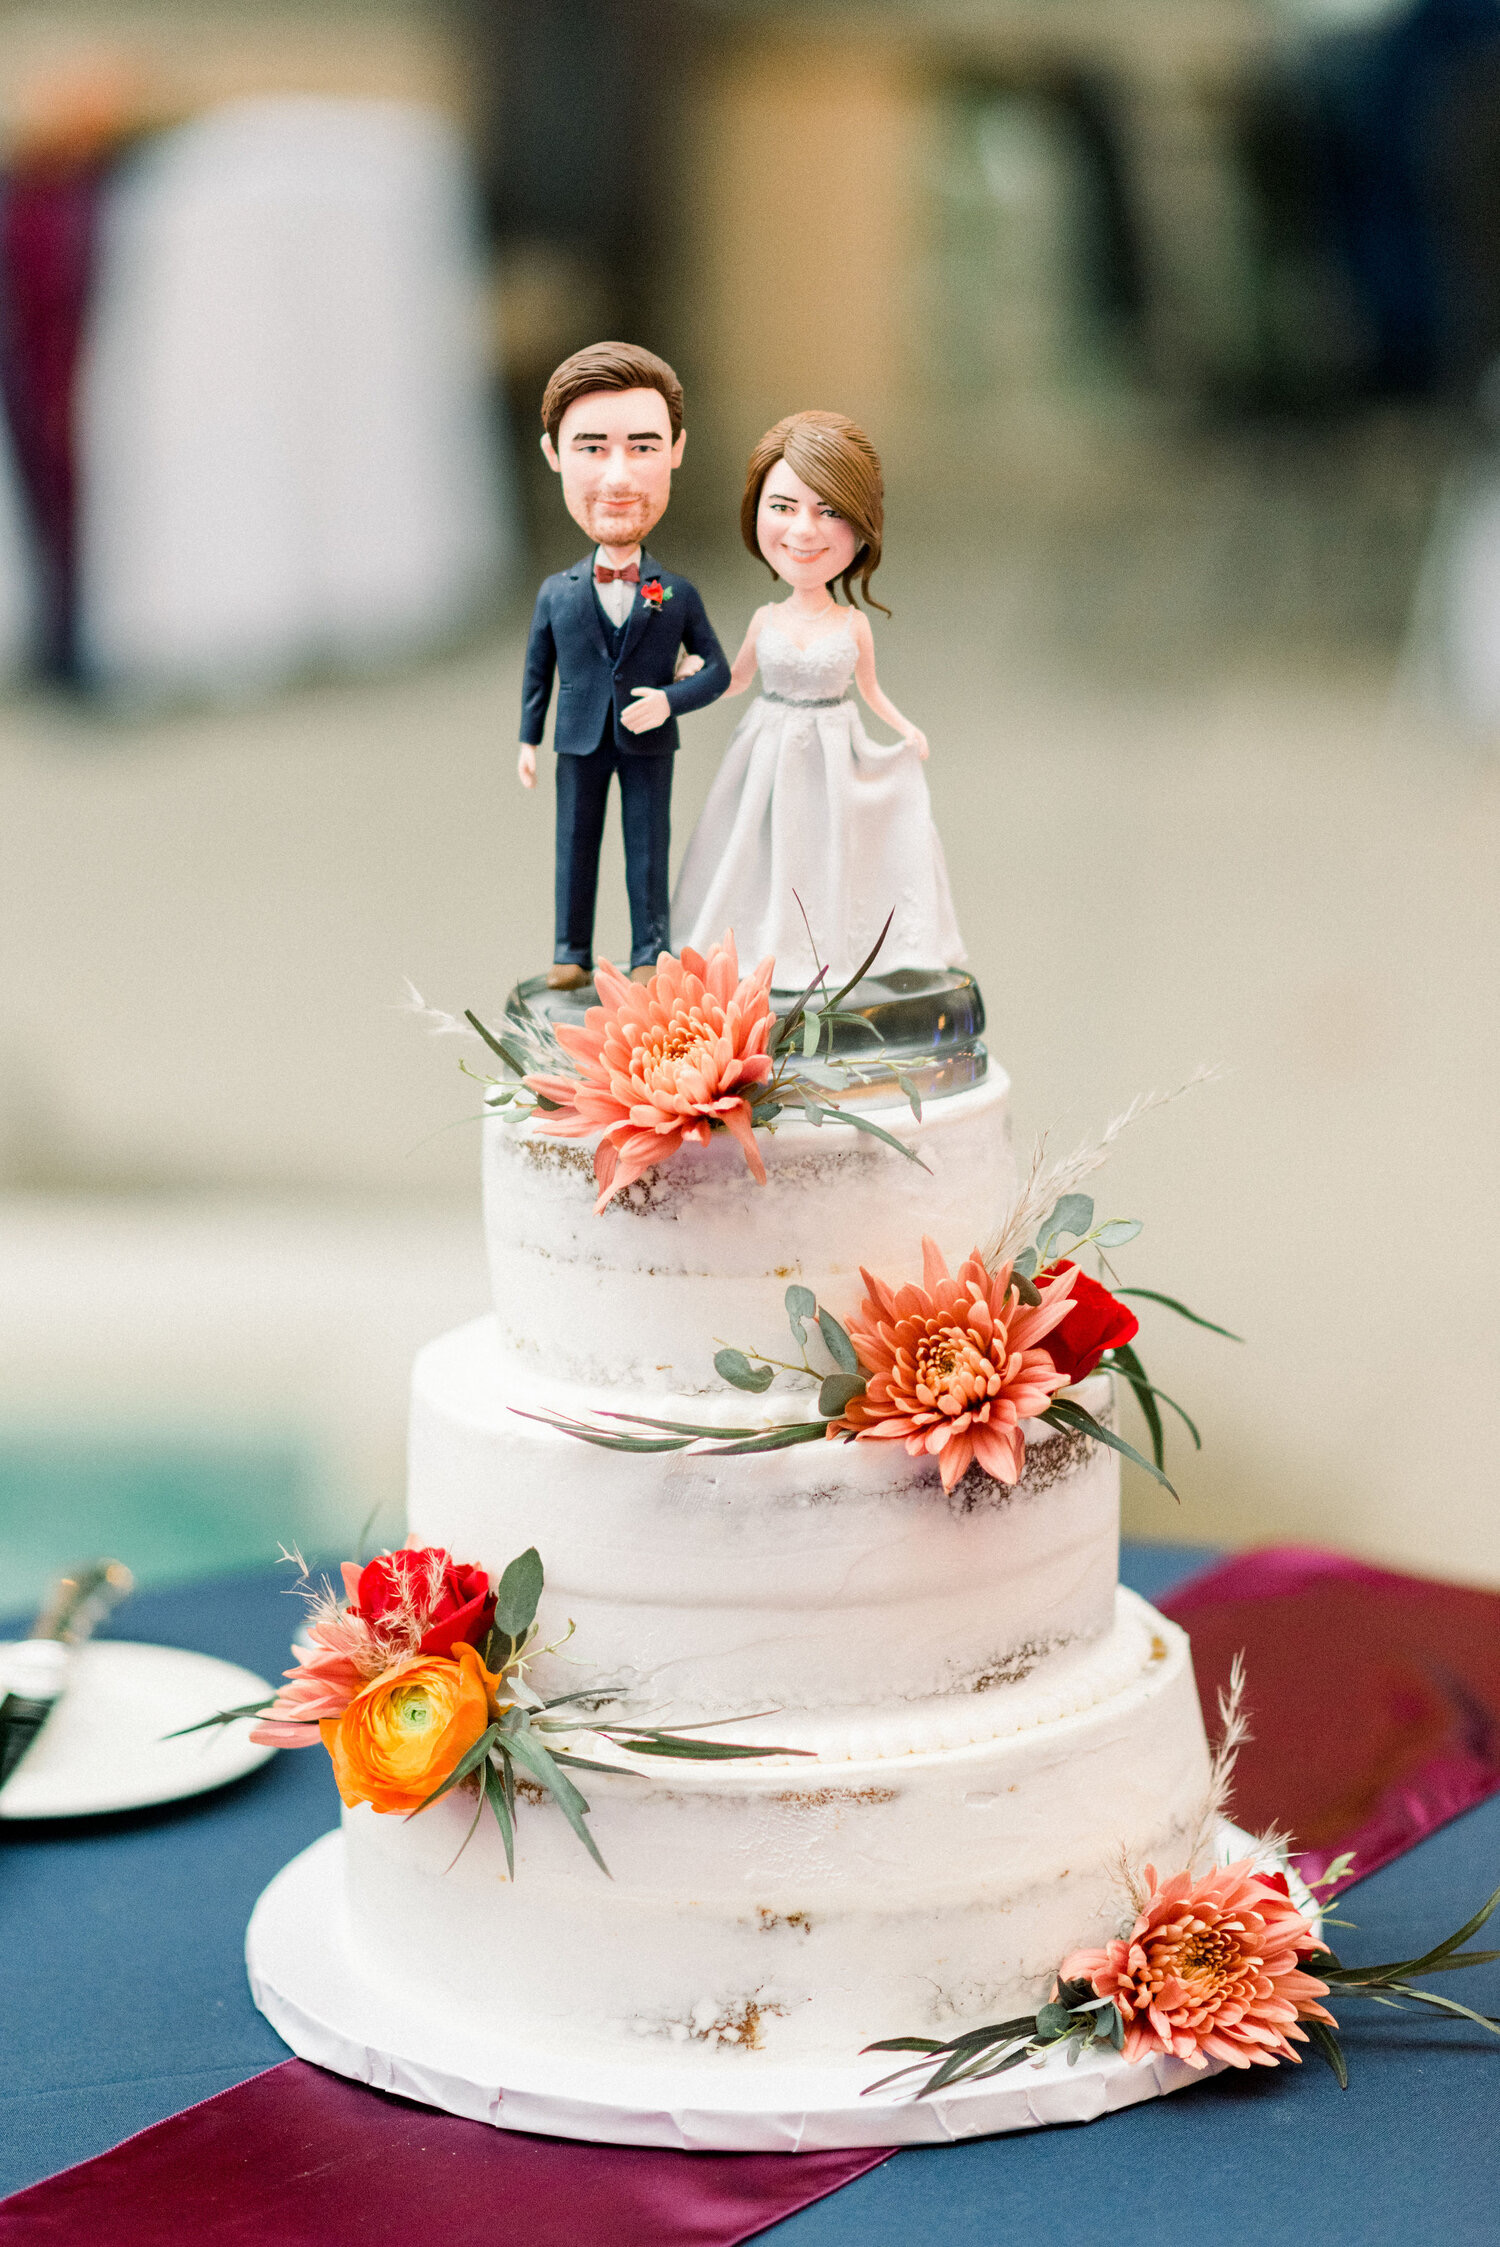 Elegant Couple Cake Topper on their Wedding Cake